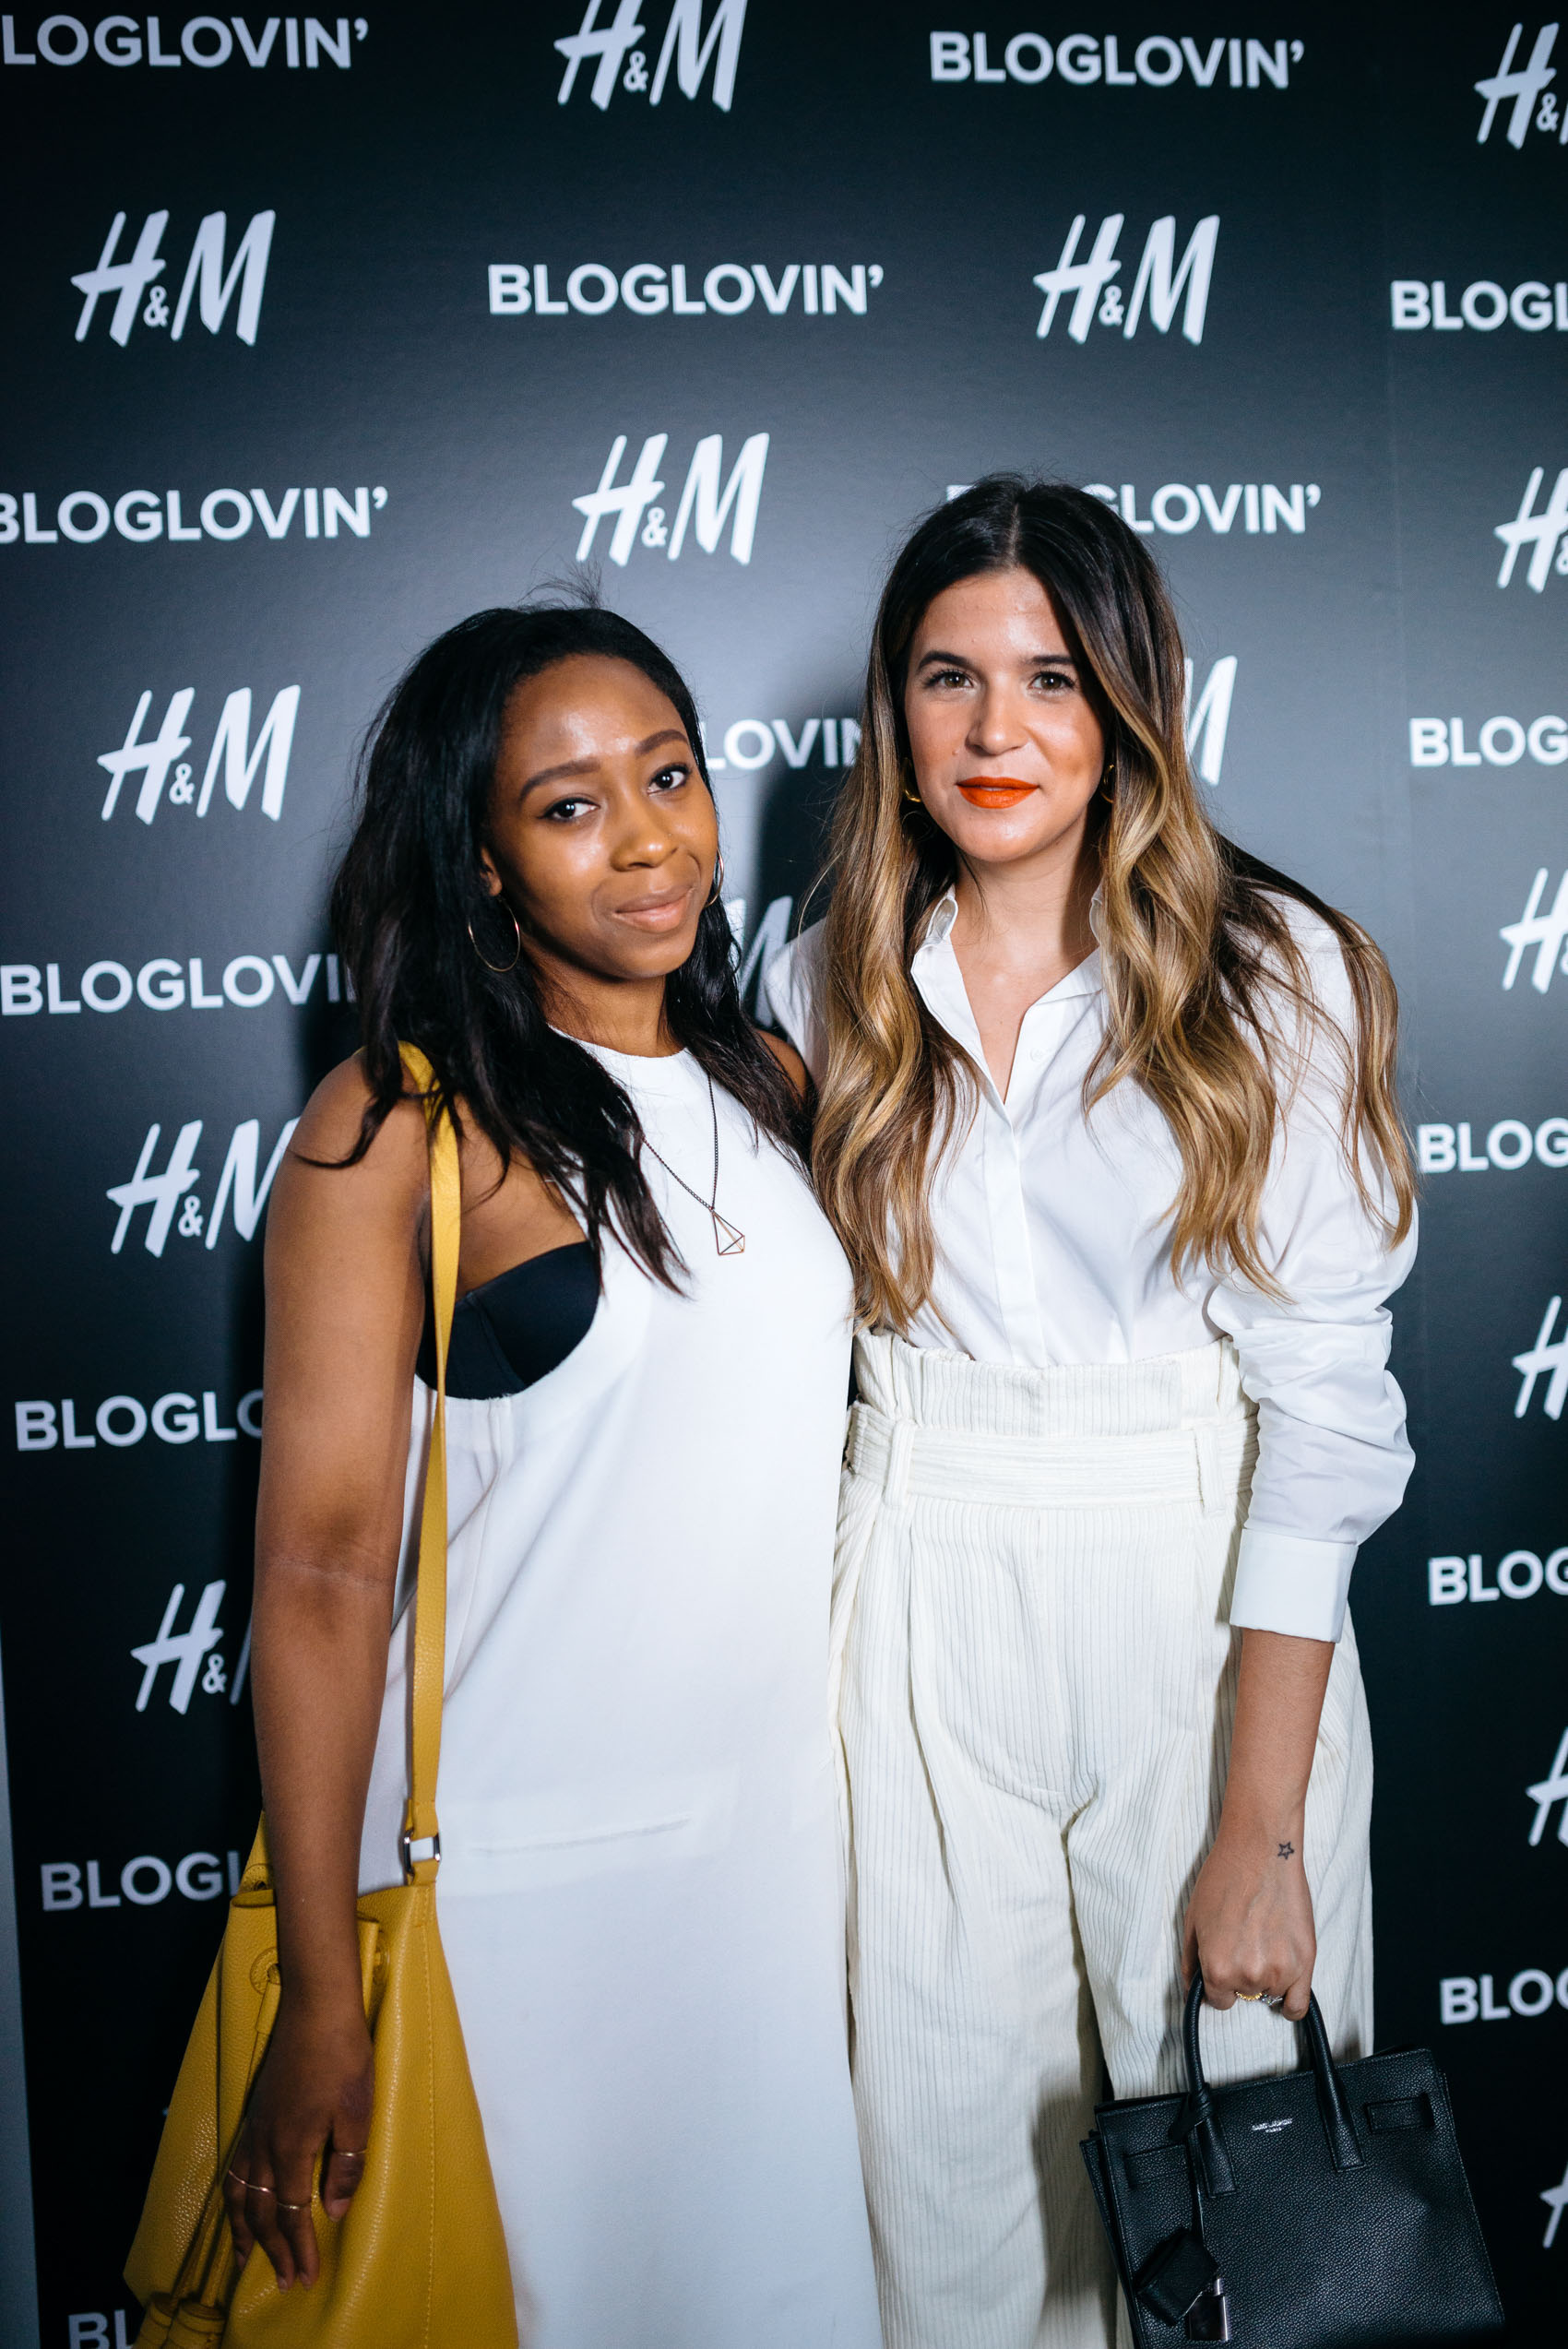 Maristella Gonzalez and Christina Shutti at the Bloglovin Awards 2016